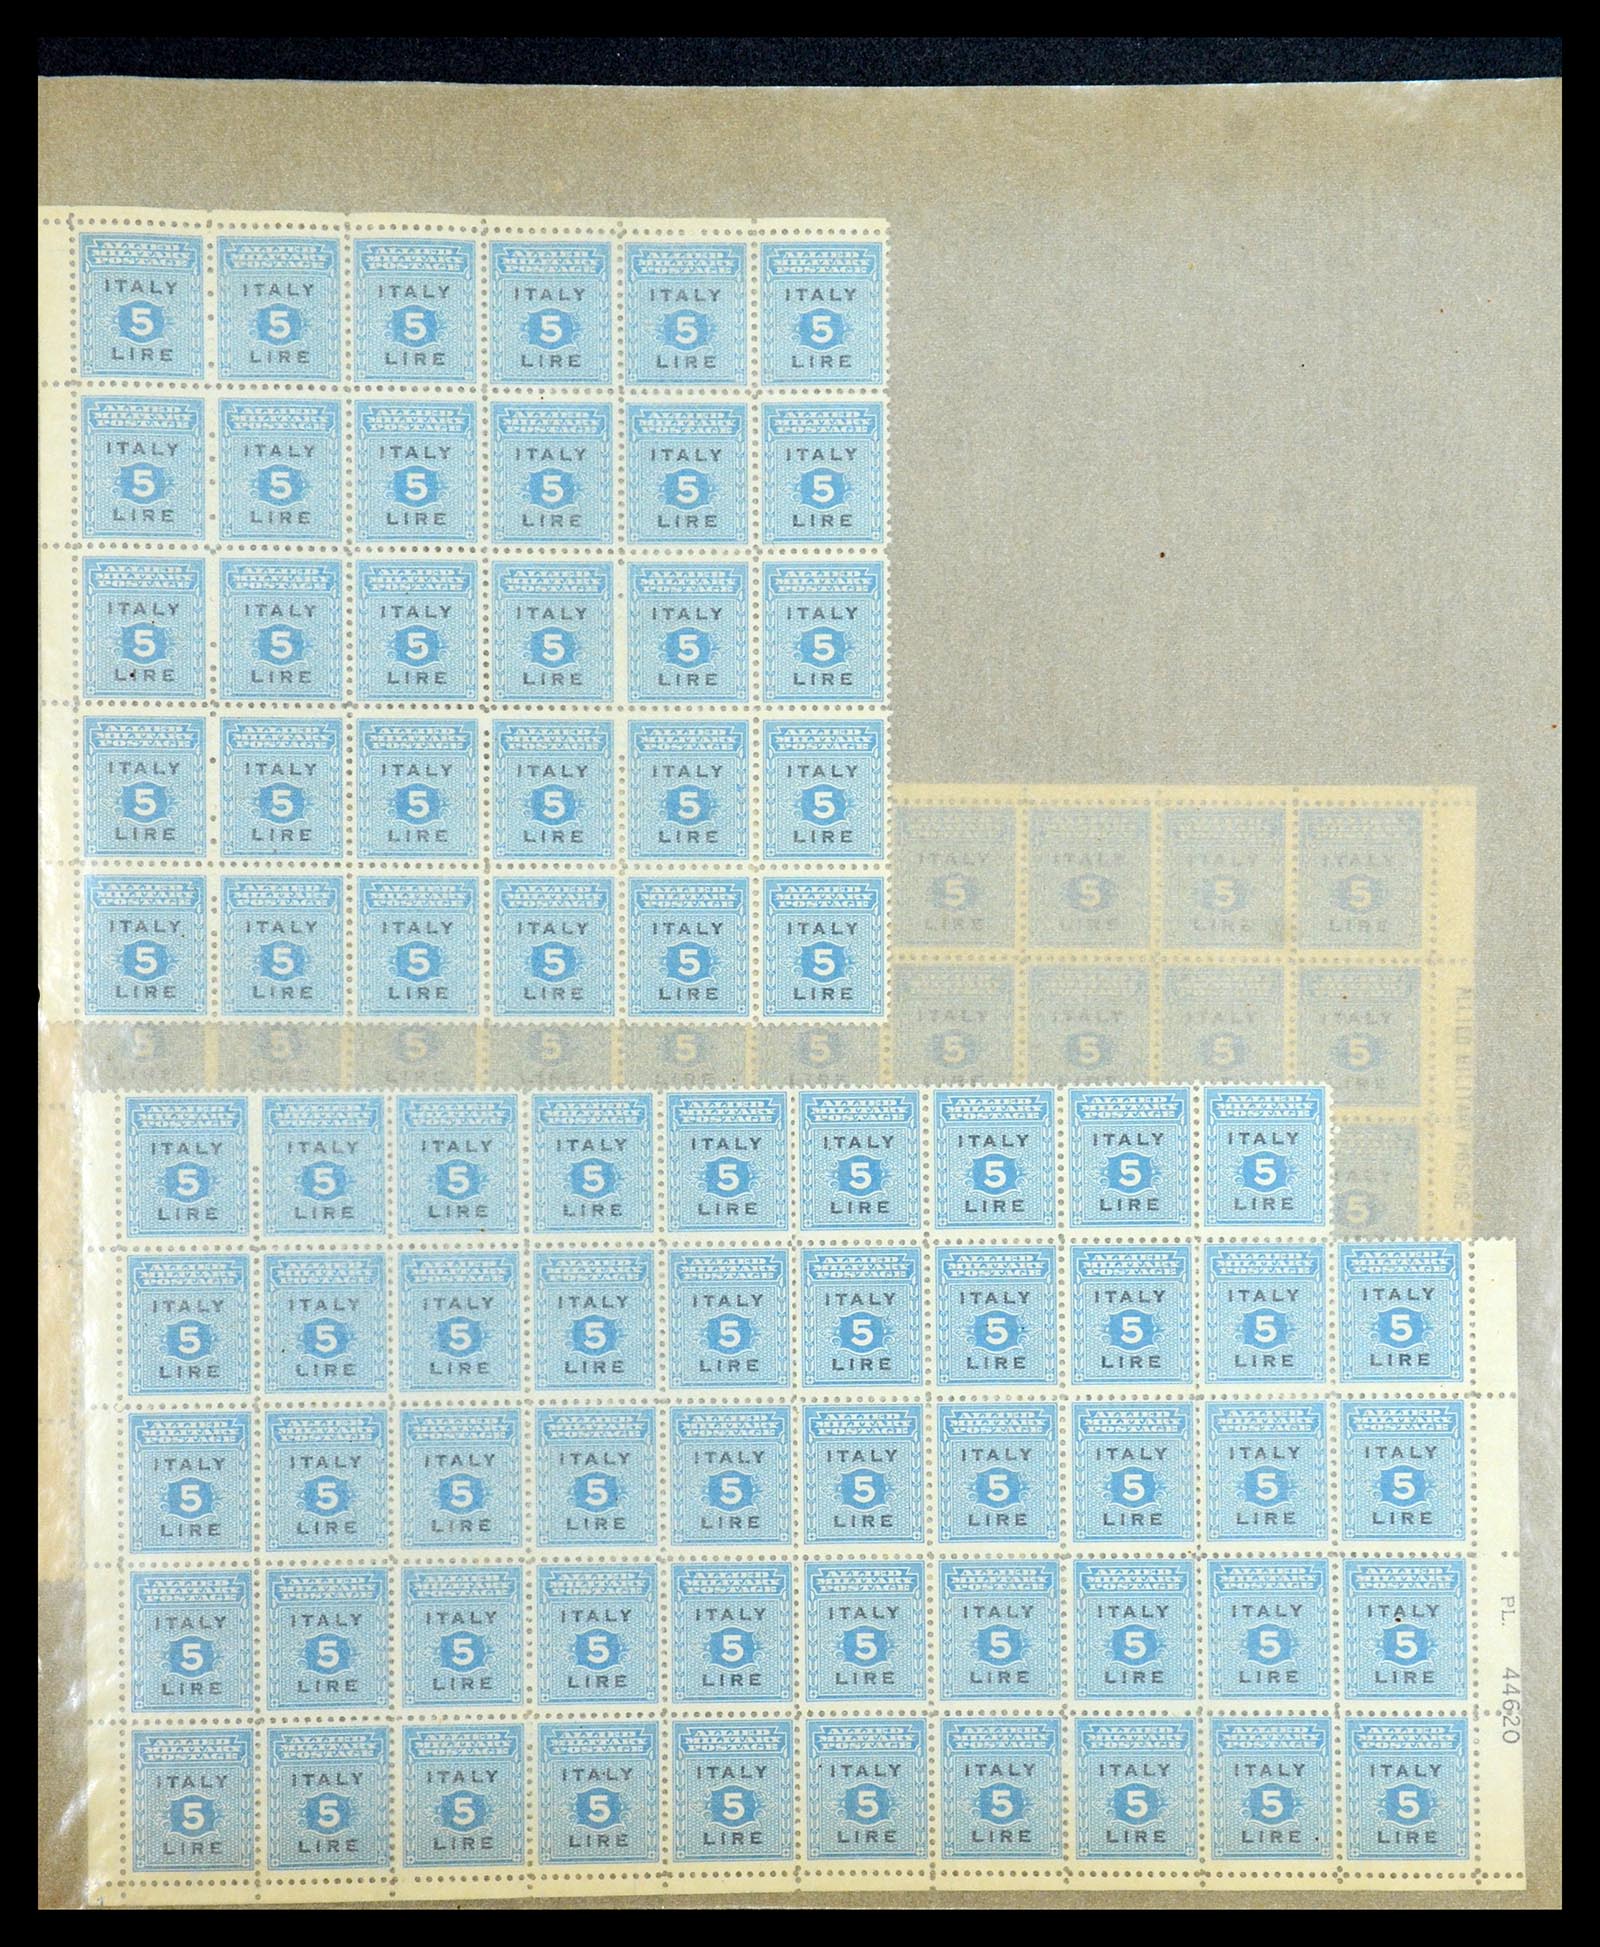 36313 123 - Postzegelverzameling 36313 Wereld uitzoekpartij 1850-1950.